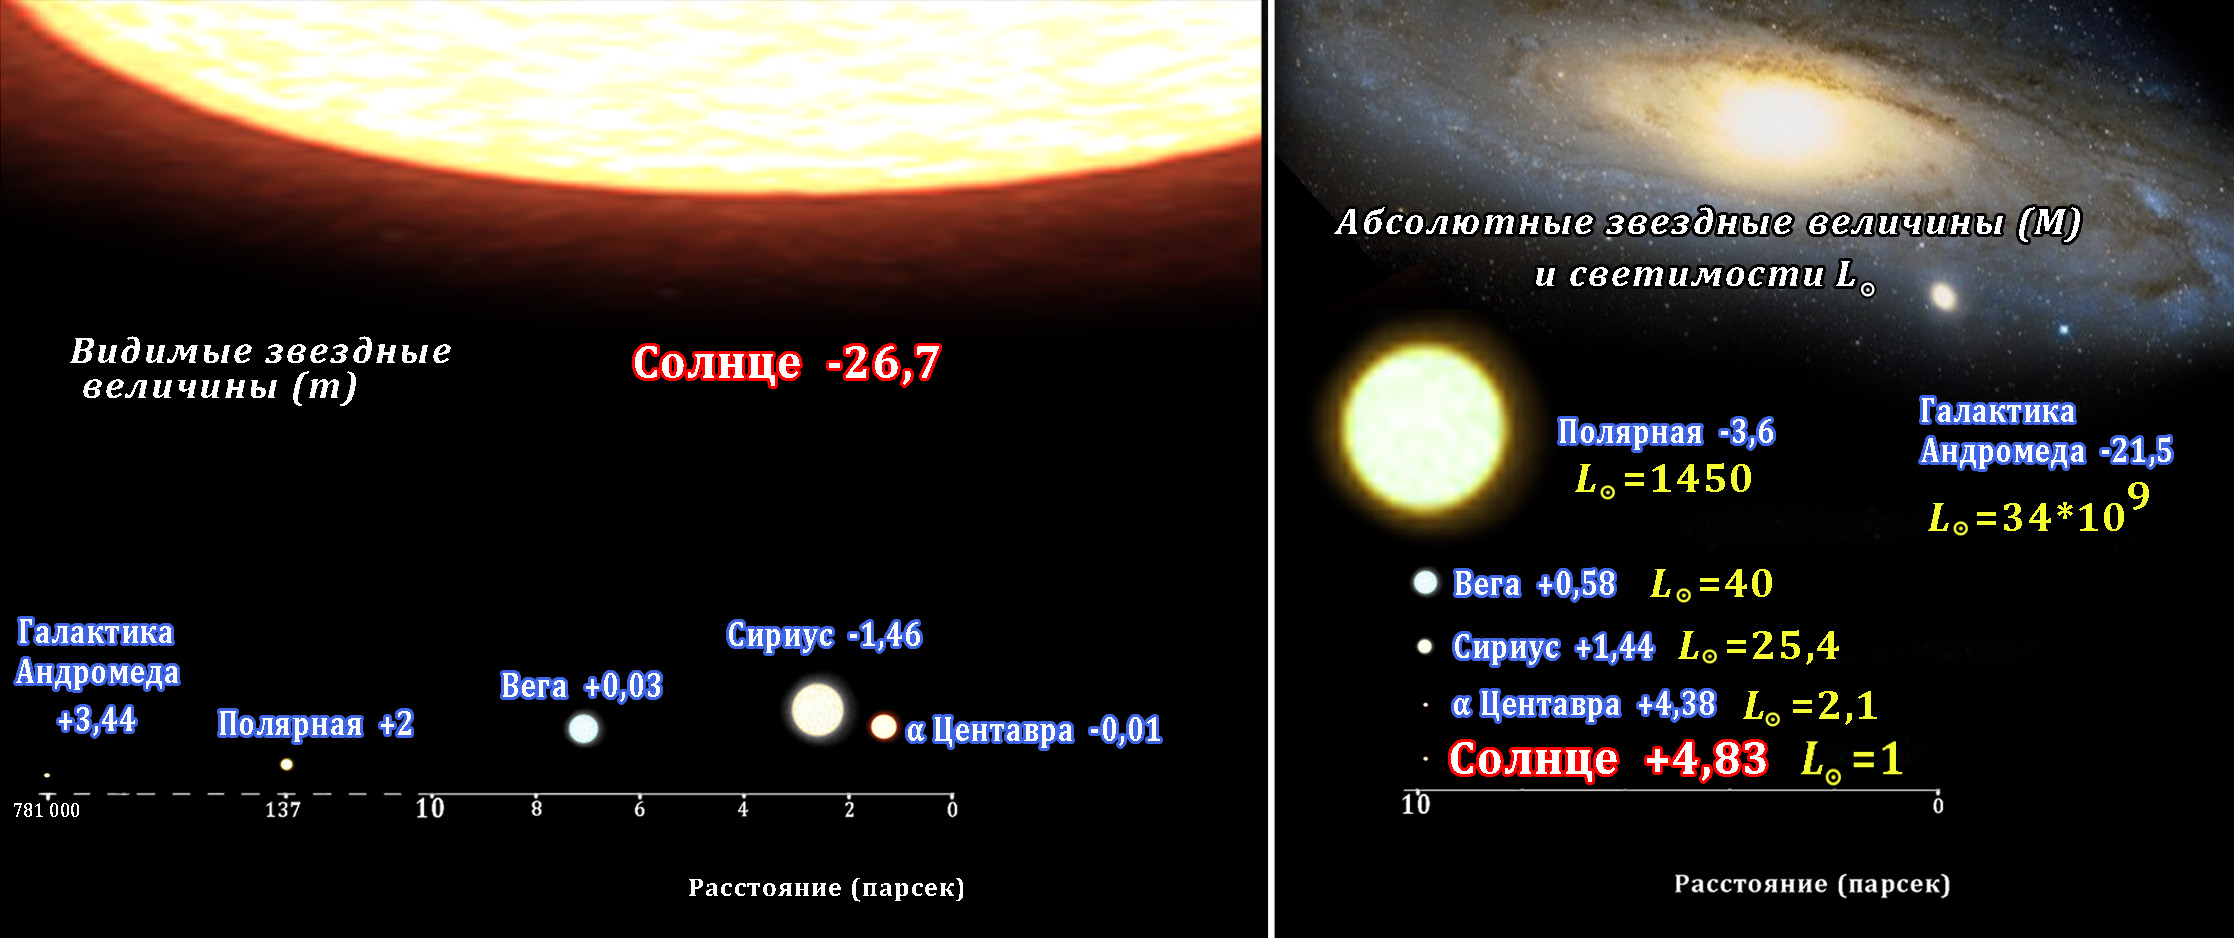 Во сколько раз отличаются светимости двух звезд. Абсолютная Звездная величина солнца. Абсолютная Звездная величина Сириуса. Видимая и абсолютная Звездная величина светимость звезд. Видимая Звездная величина и абсолютная Звездная.